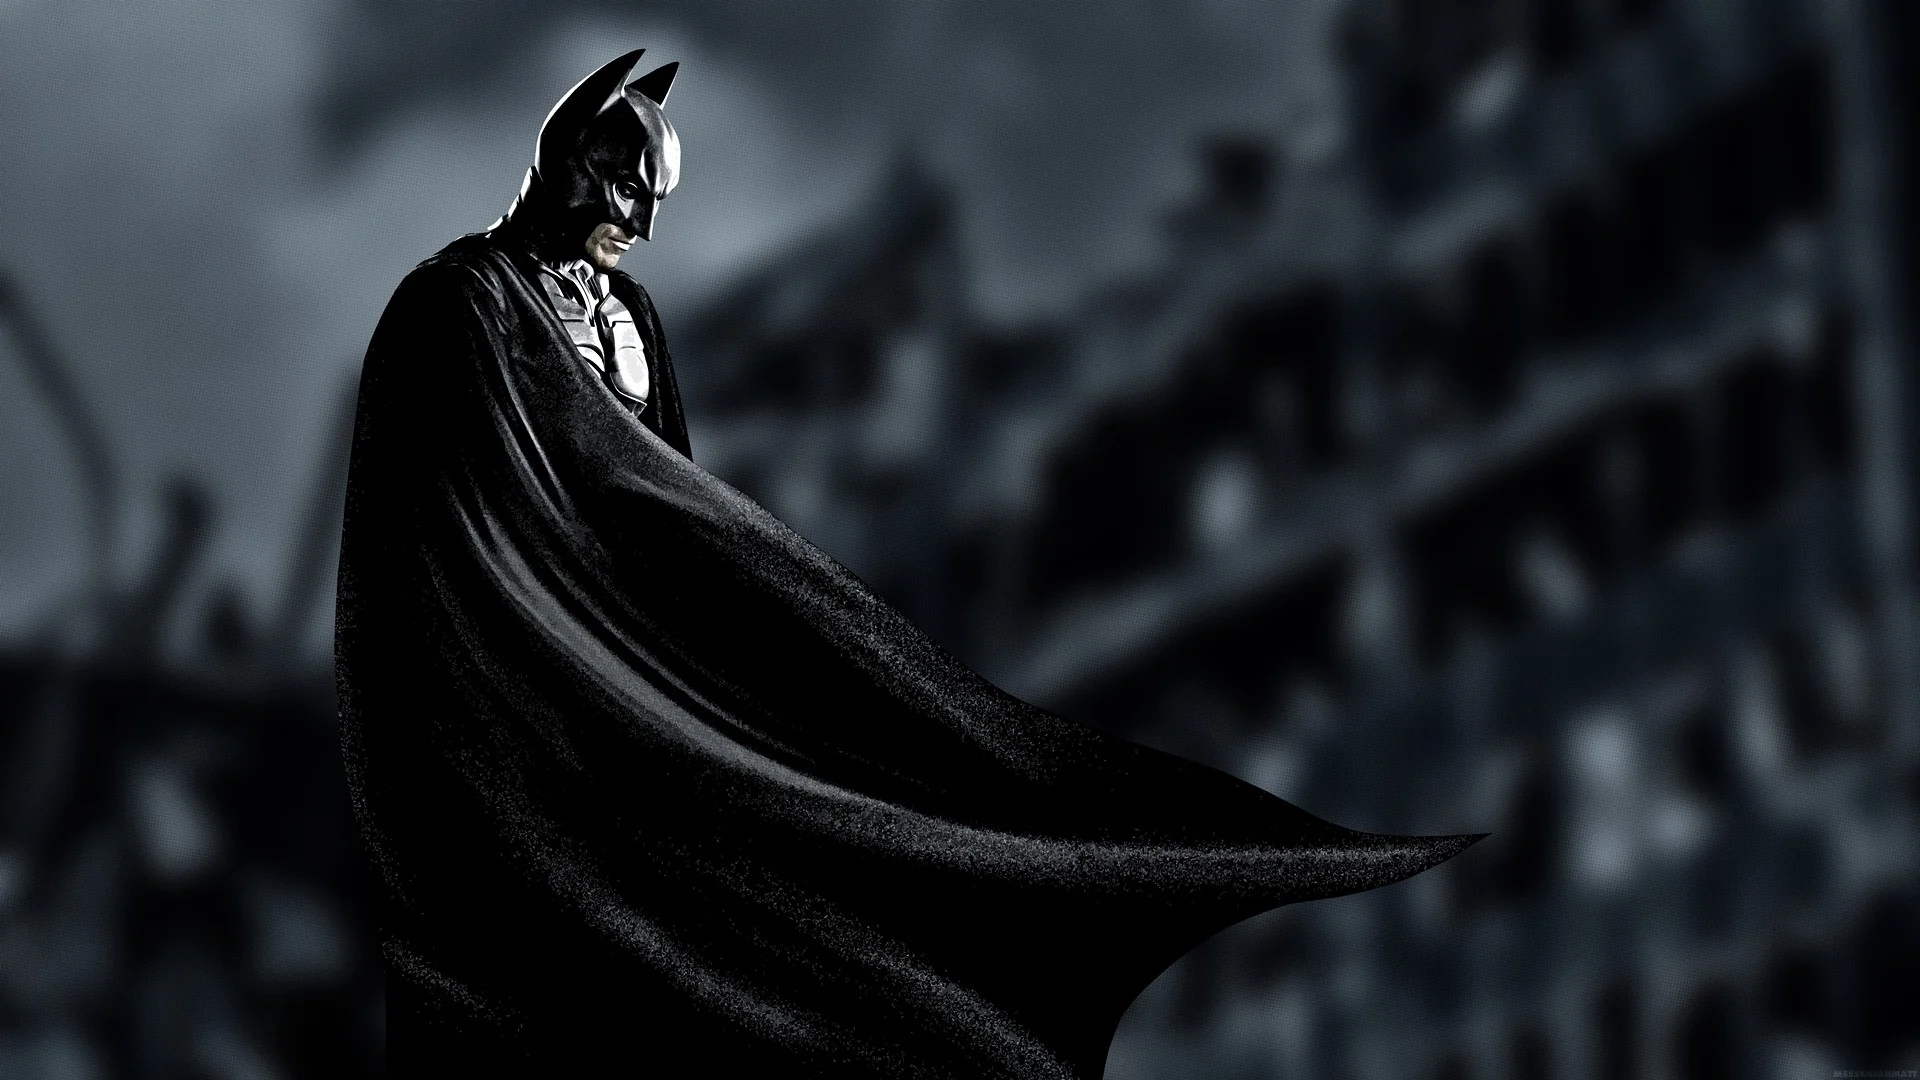 СМИ: сценарий нового фильма про Бэтмена завершен, известна дата старта съемок - фото 1